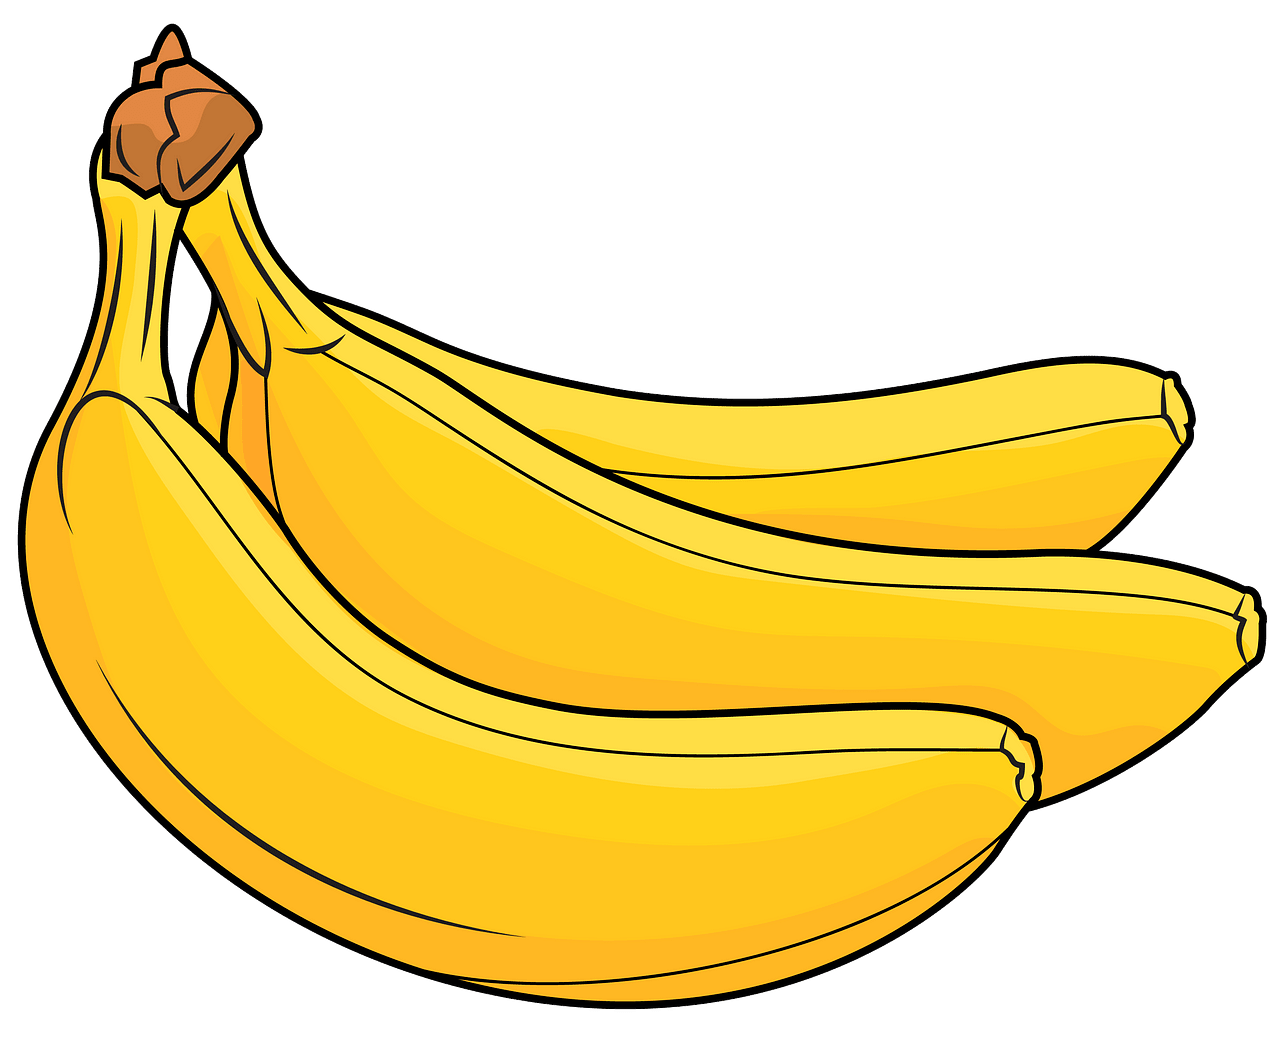 Cartoon Banana PNG Image | PNG Mart